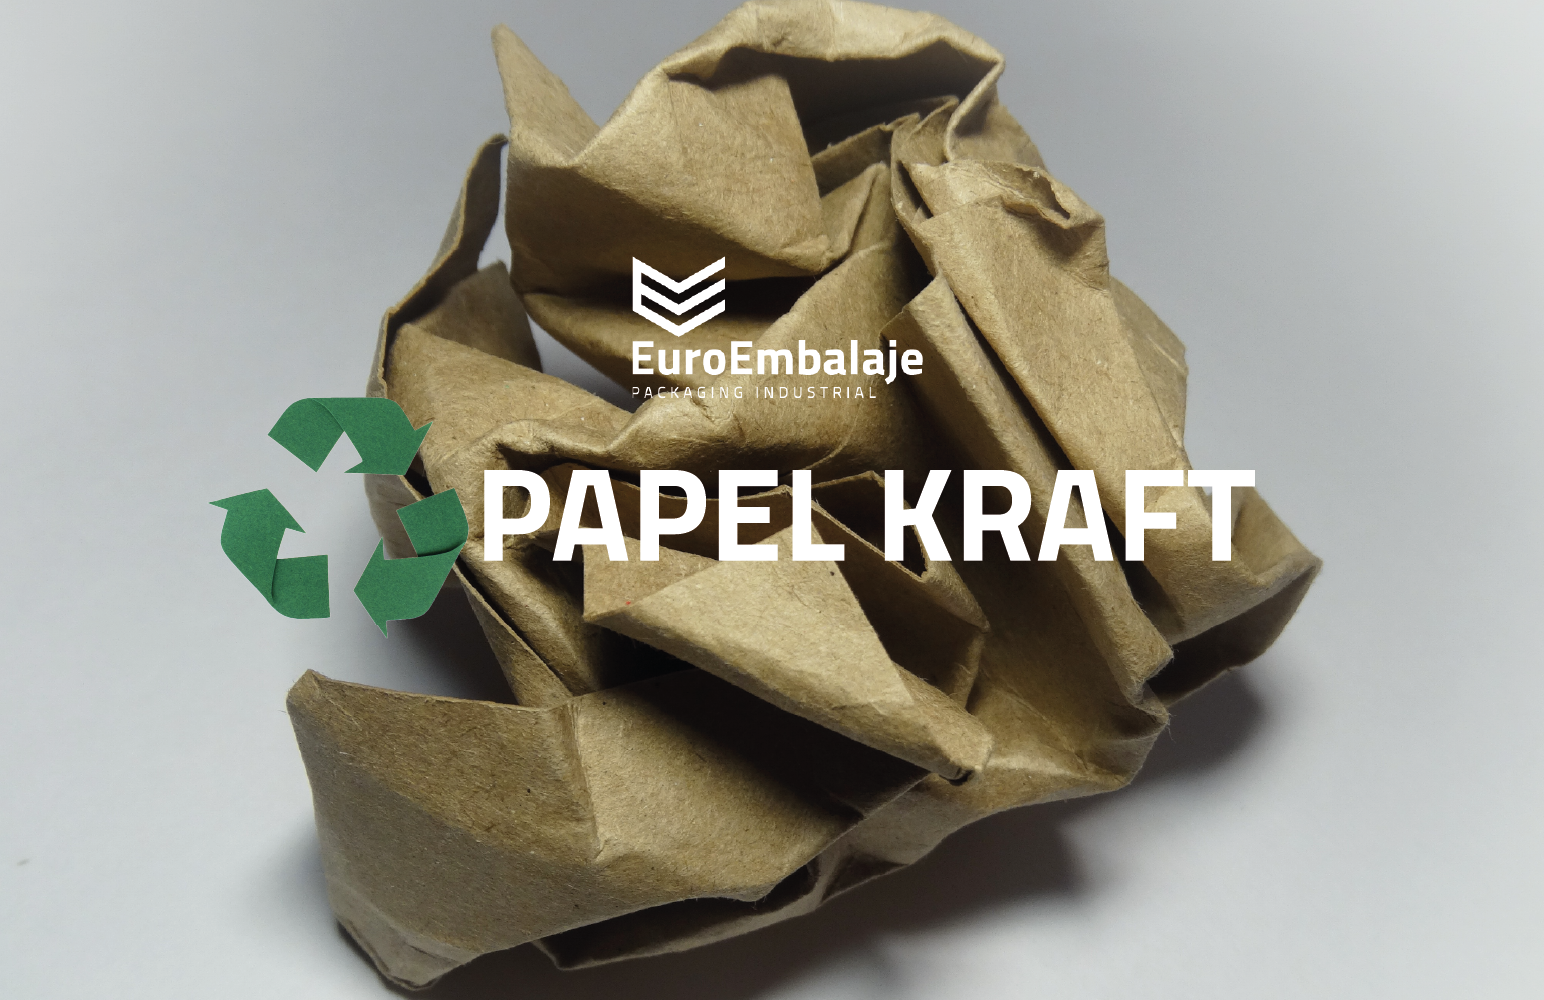 Sistema de relleno de papel: Papel kraft, reciclado y reciclable. -  EuroEmbalaje